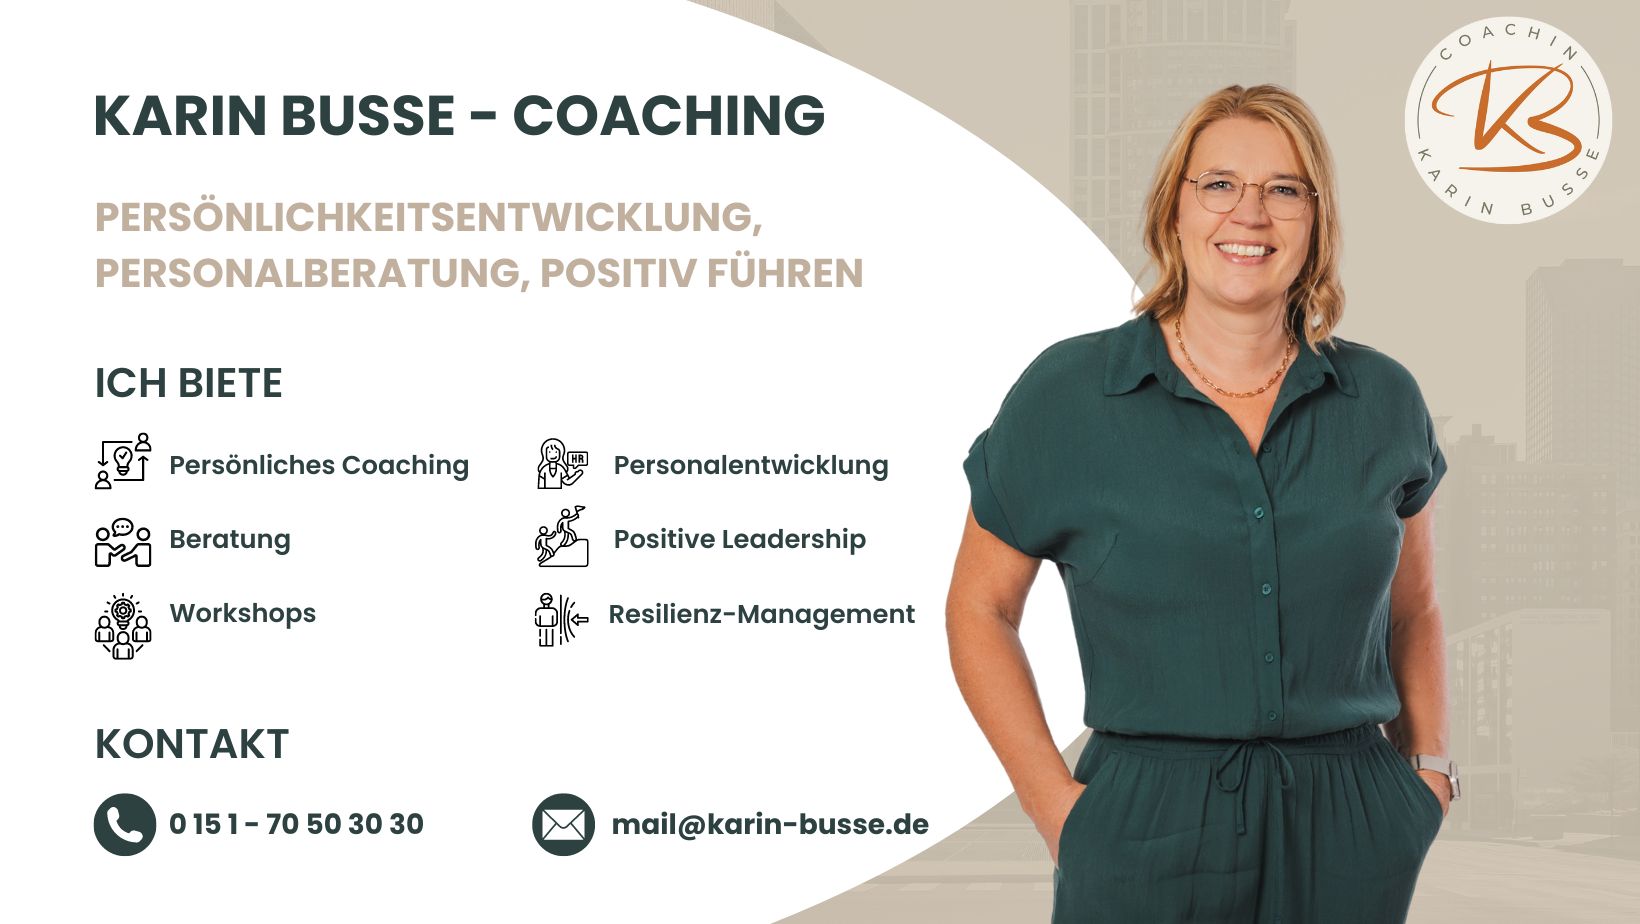 Karin Busse - Coaching